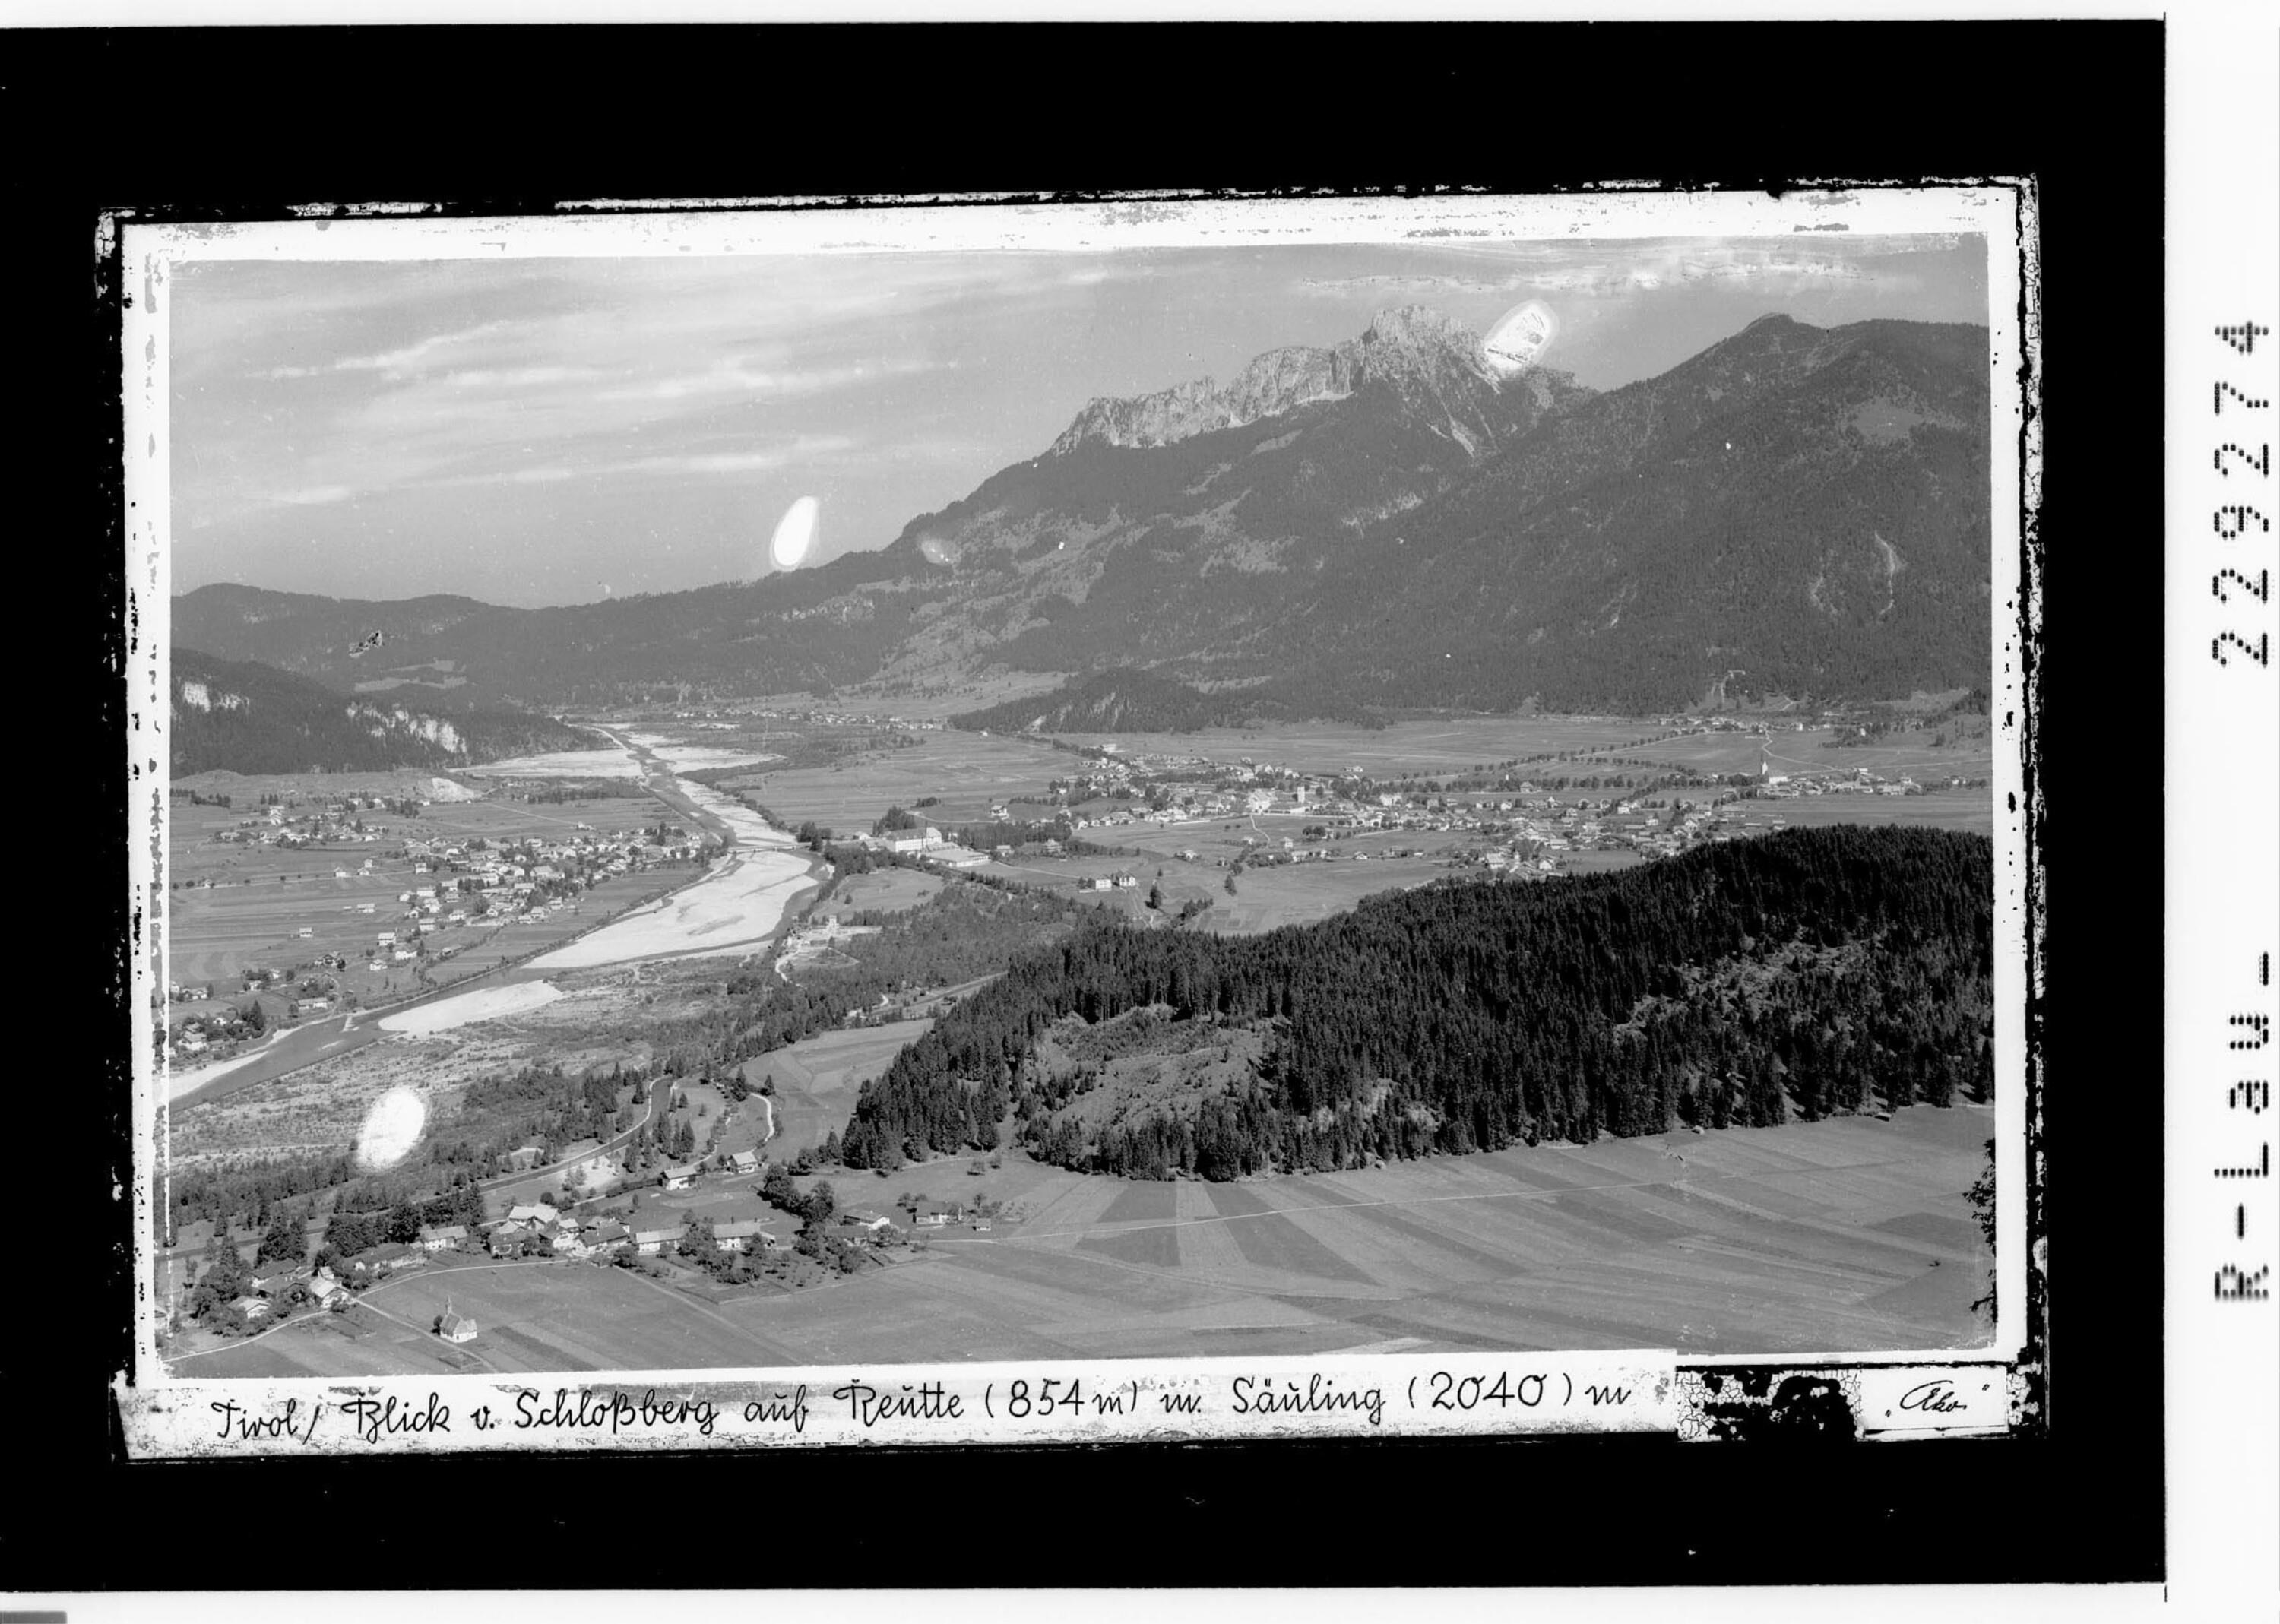 Tirol / Blick vom Schloßberg auf Reutte 854 m mit Säuling 2040 m></div>


    <hr>
    <div class=